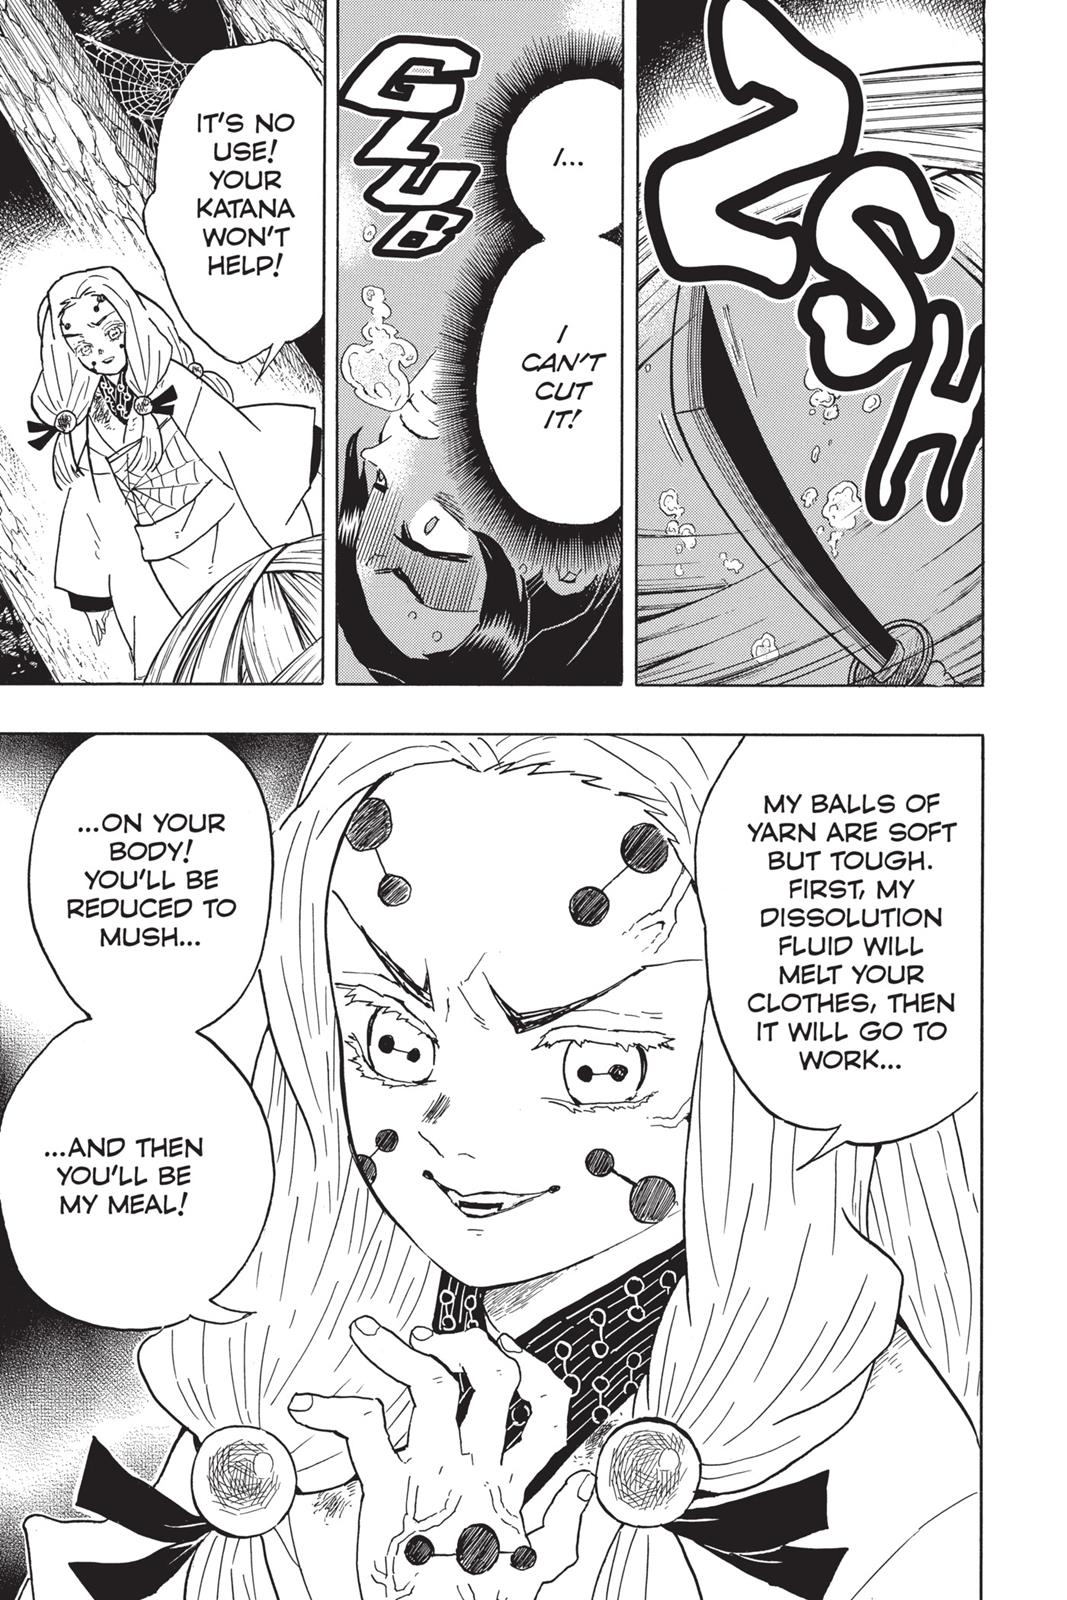 Demon Slayer Manga Manga Chapter - 41 - image 7